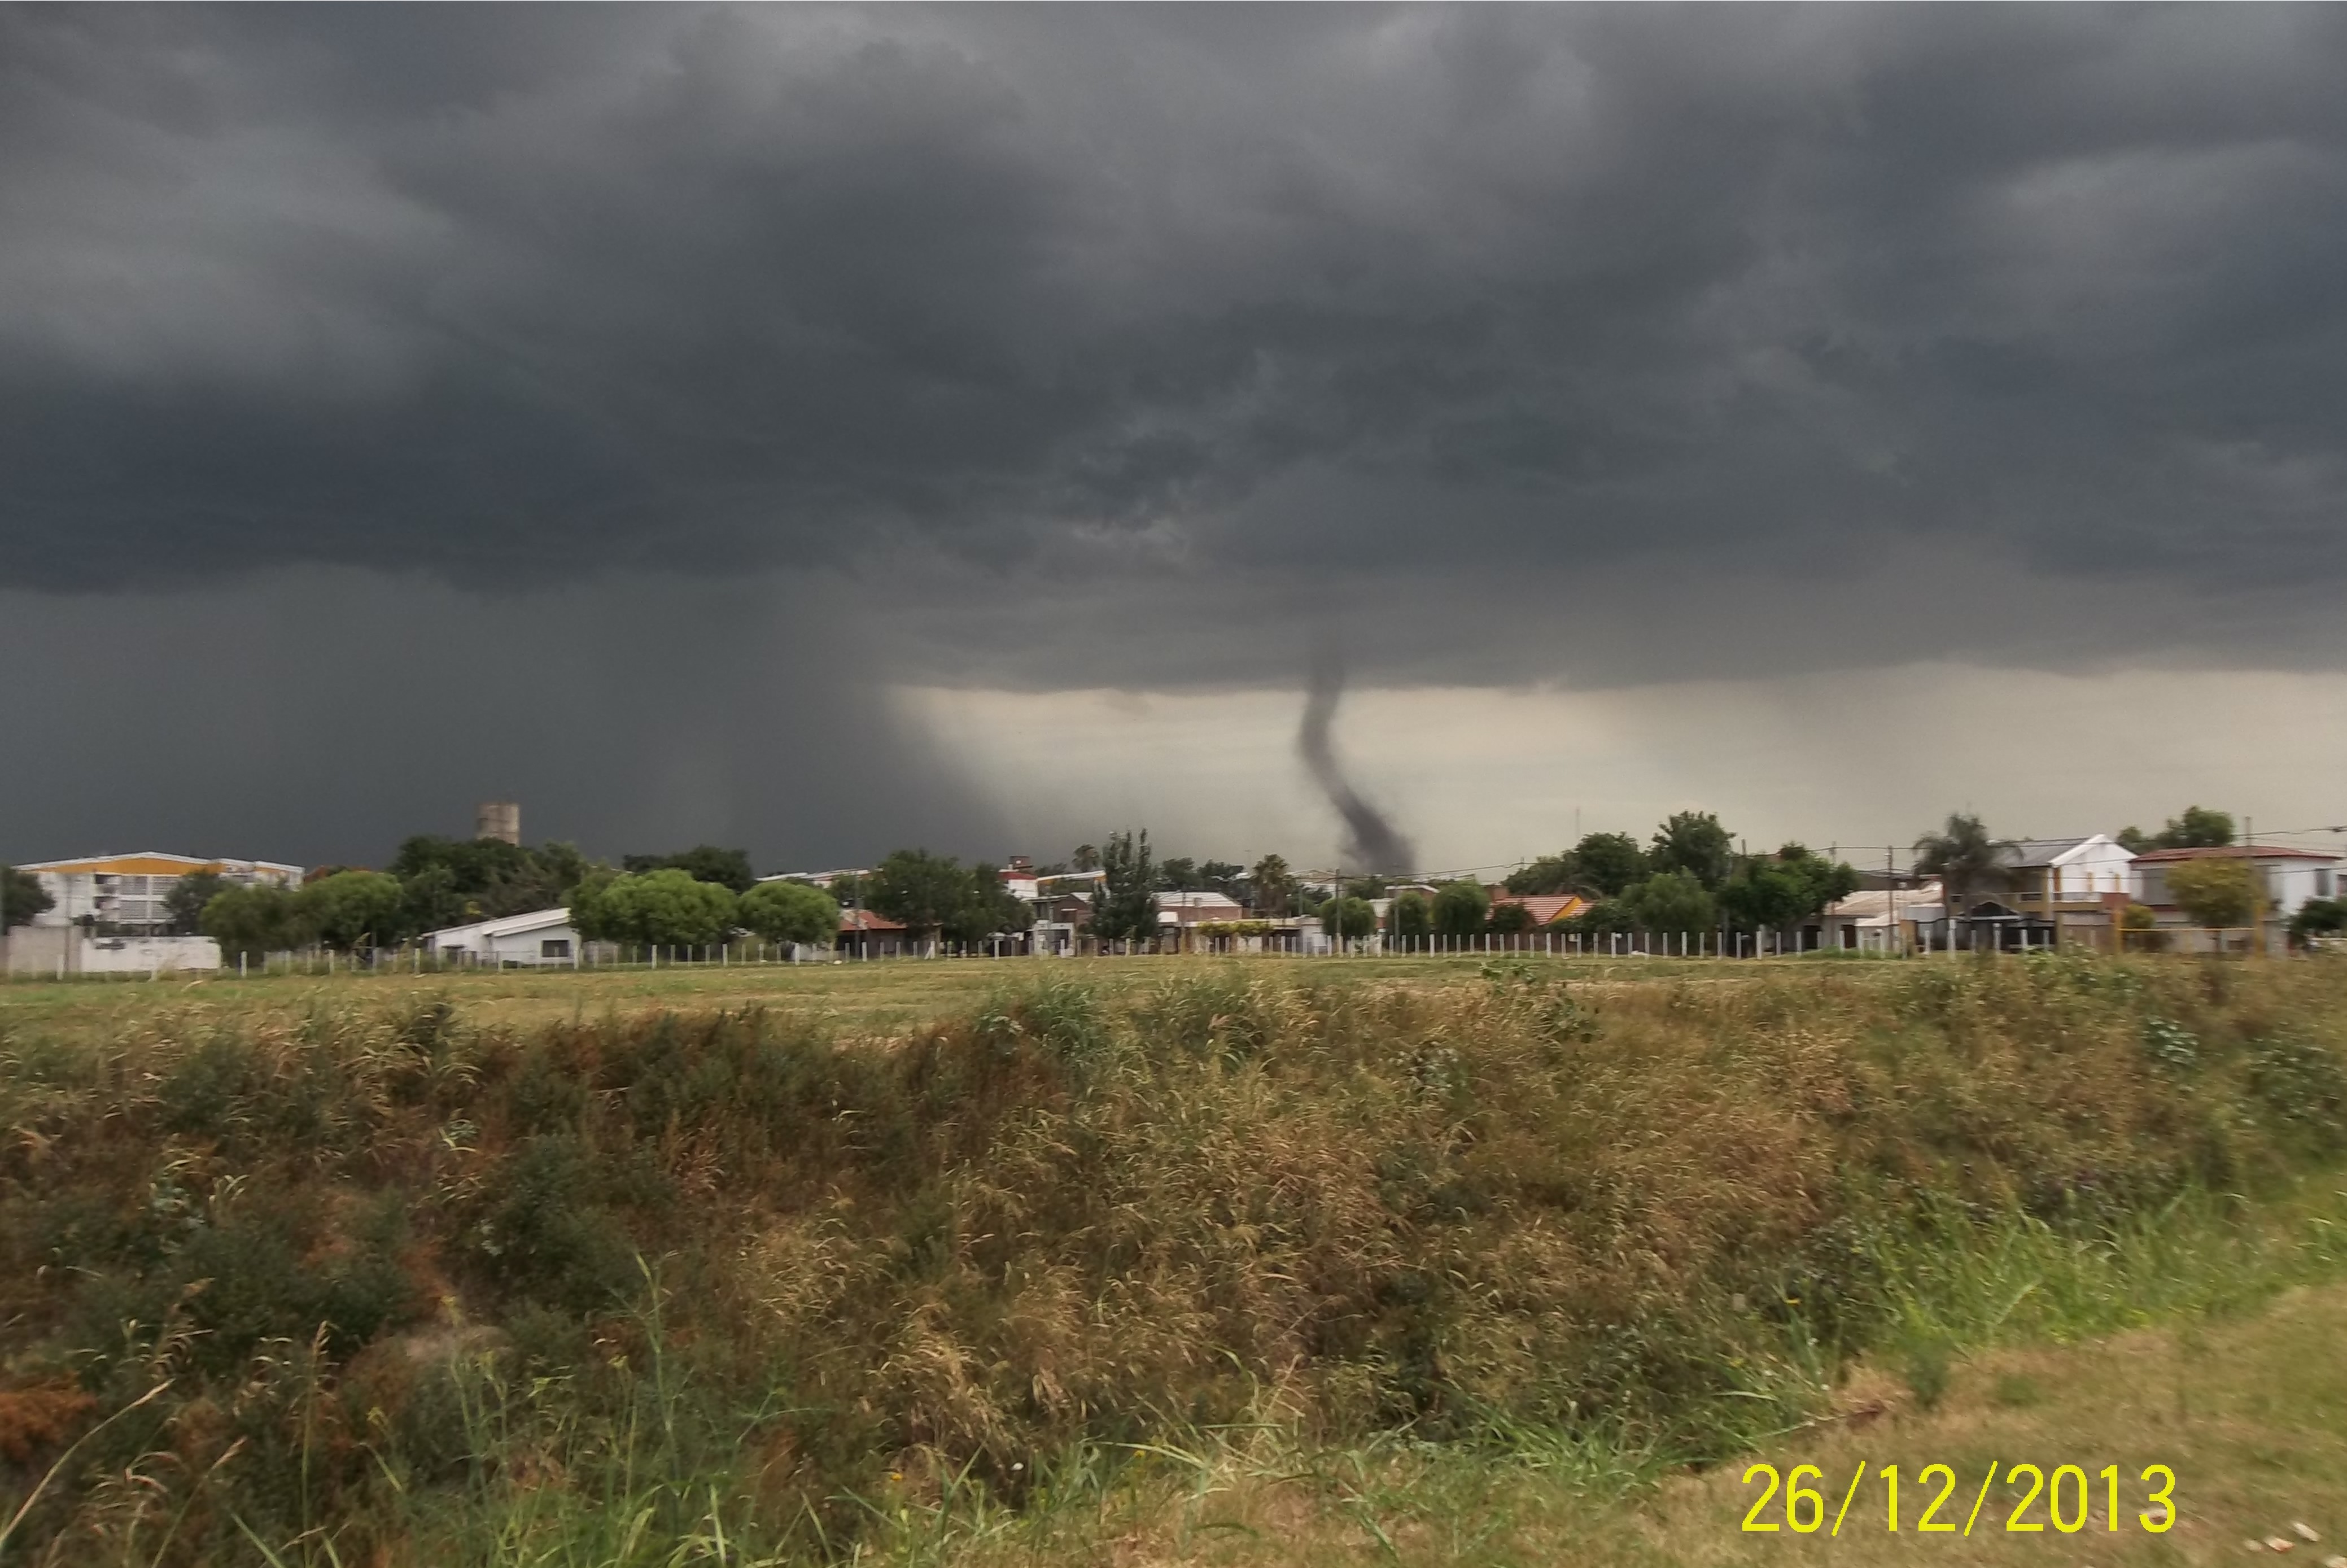 Otra imagen del tornado en las afueras de San Lorenzo, Santa Fe (Luciano Sigalotti).